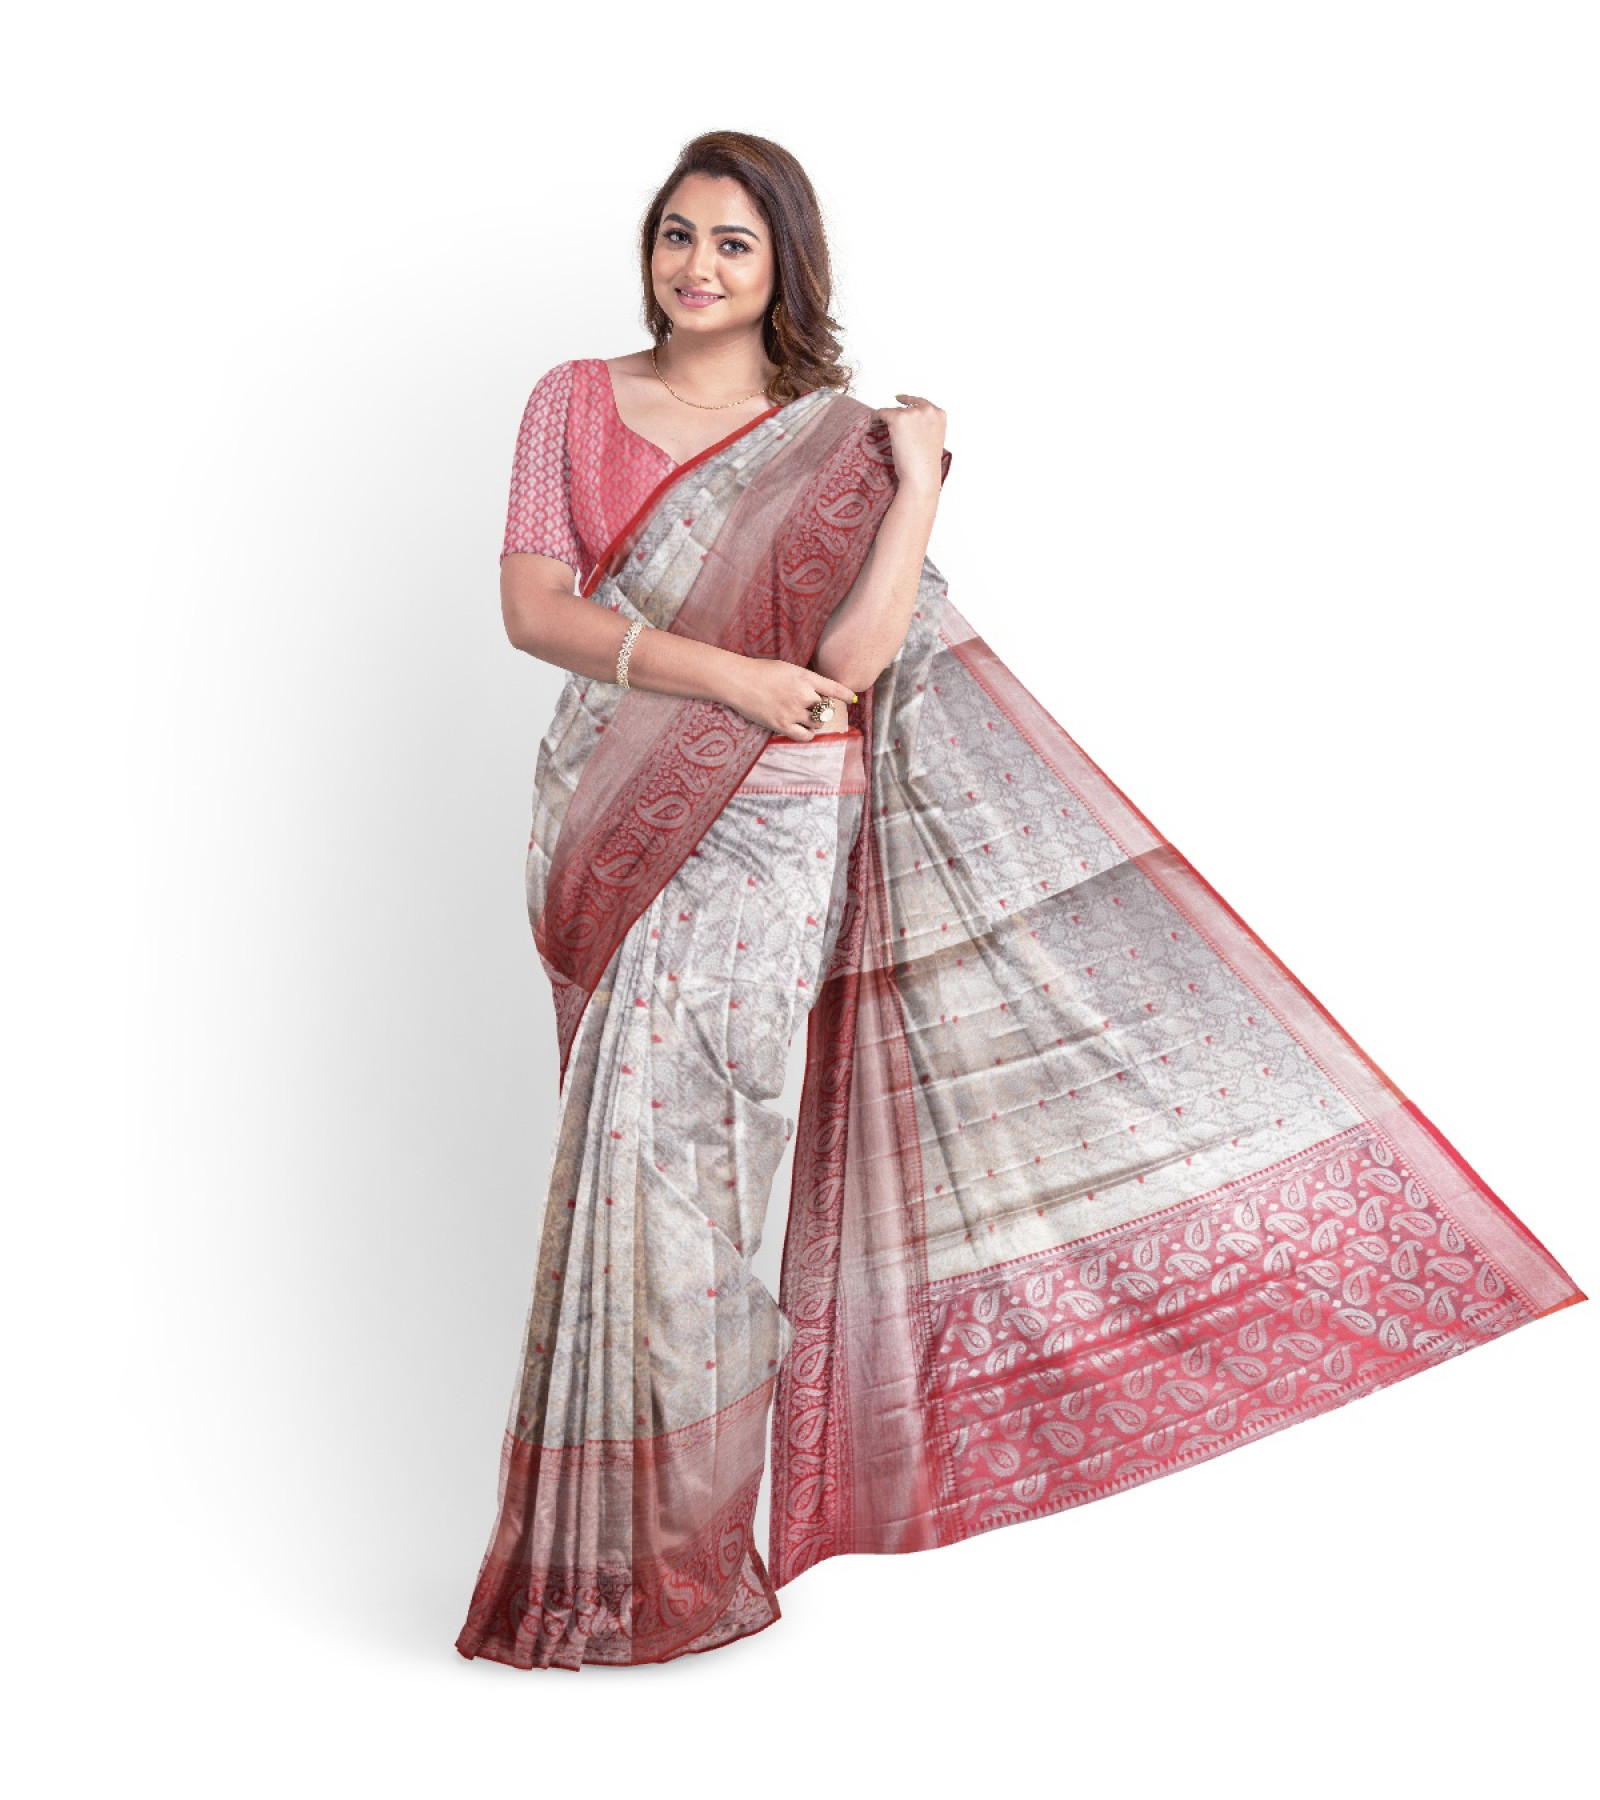 Exclusive Silver Tissue Kanjivaram Saree by Abaranji 